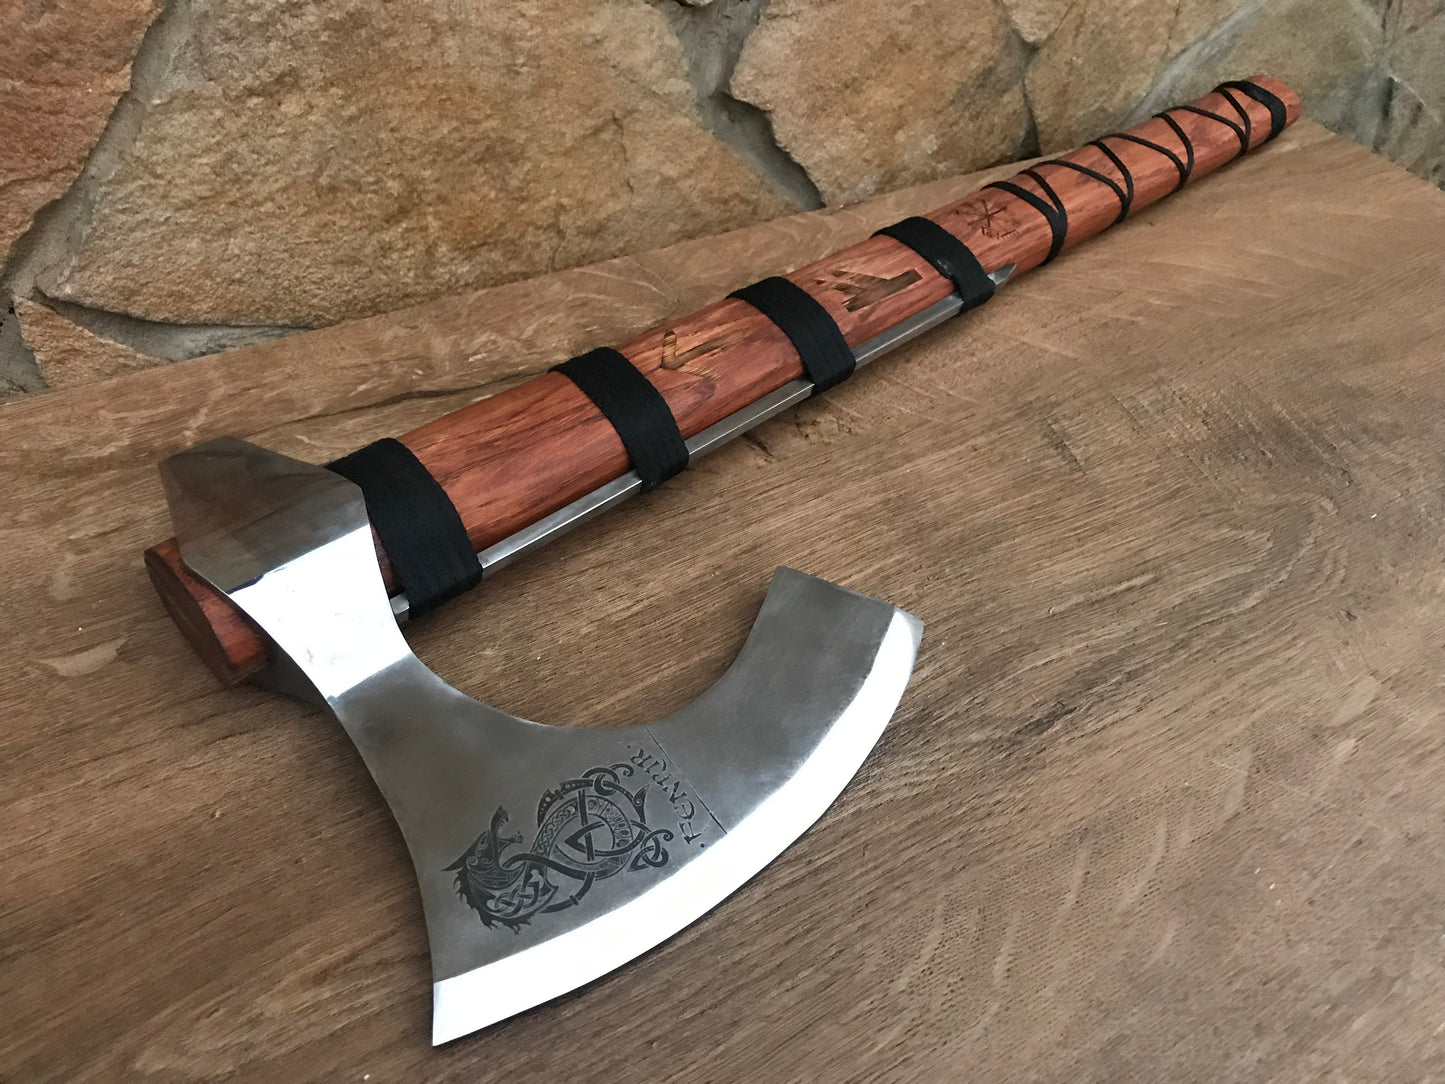 Runic axe, Fenrir, perun axe, pagan axe, viking axe, Ragnar, Dane axe, The Raider, bearded axe,Norse axe,berserker axe,mjolnir,viking weapon